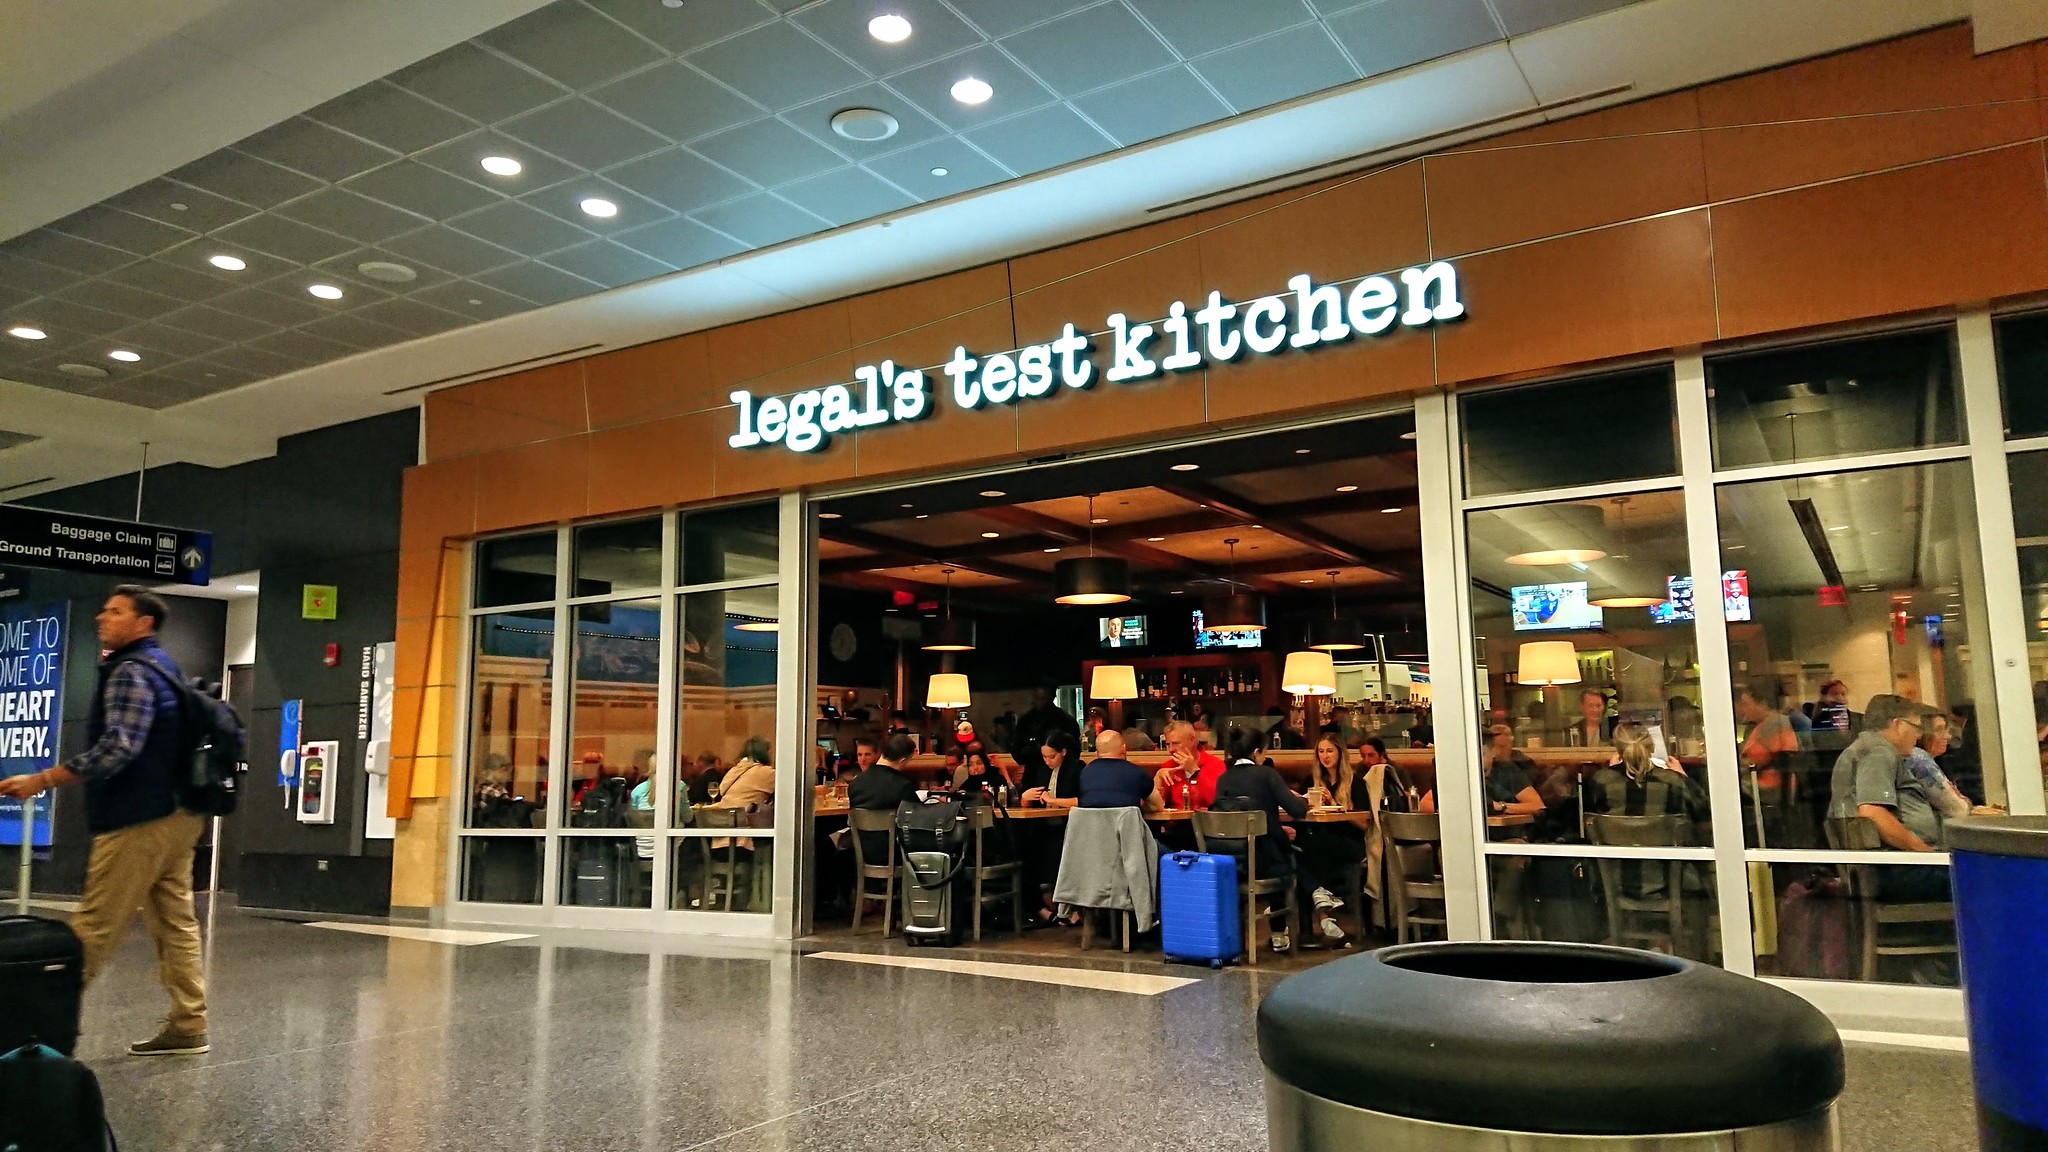 Legal’s test kitchen - BOS - Boston, MA